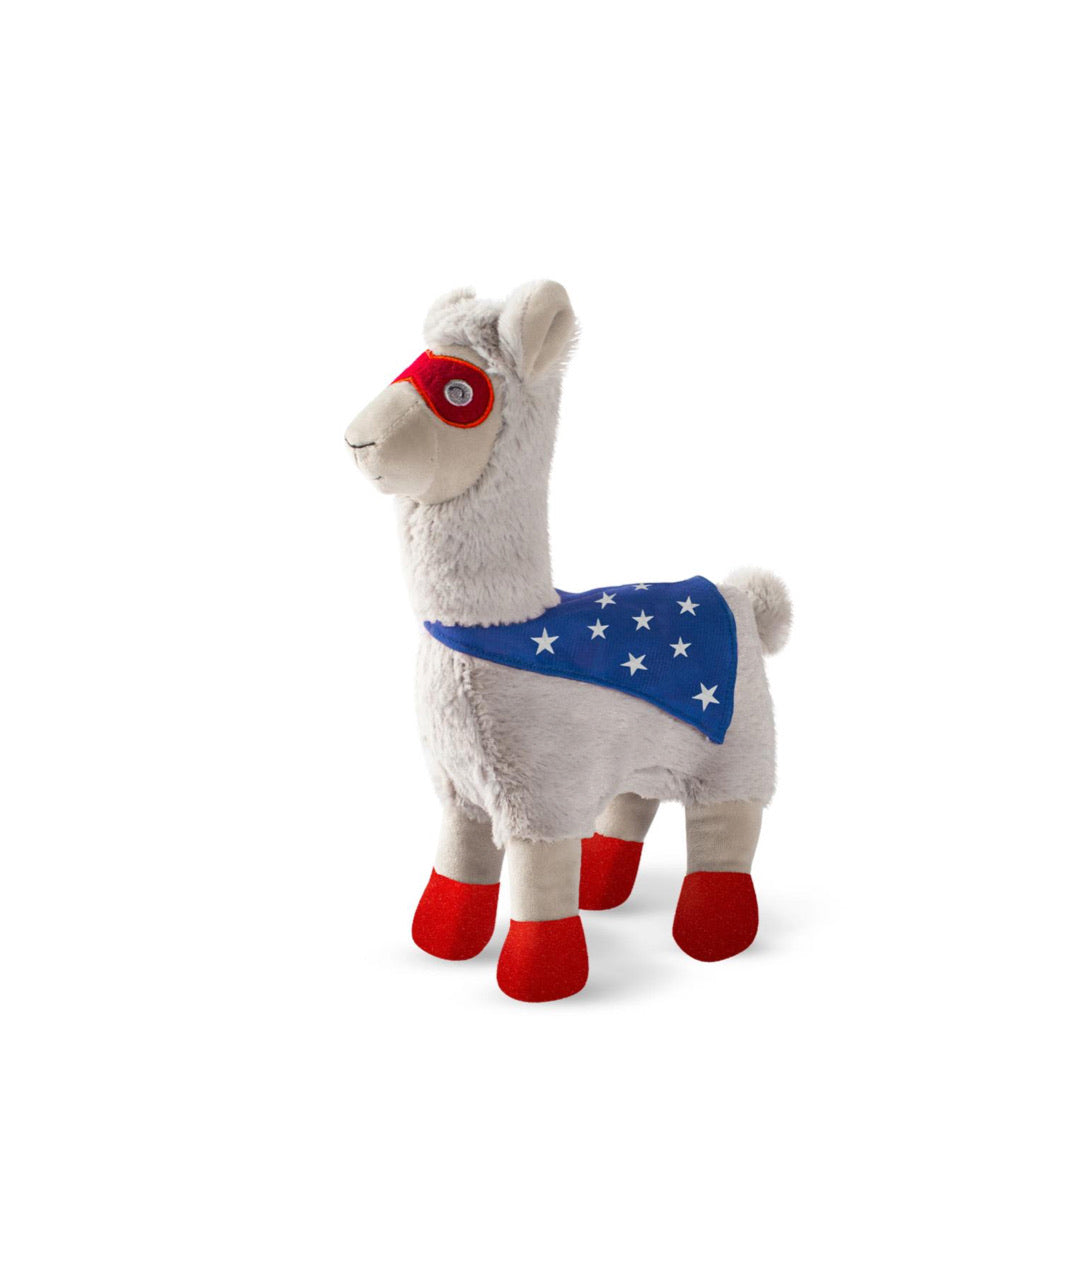 Fringe Studio Toy Box Super Llama Squeaky Plush Toy